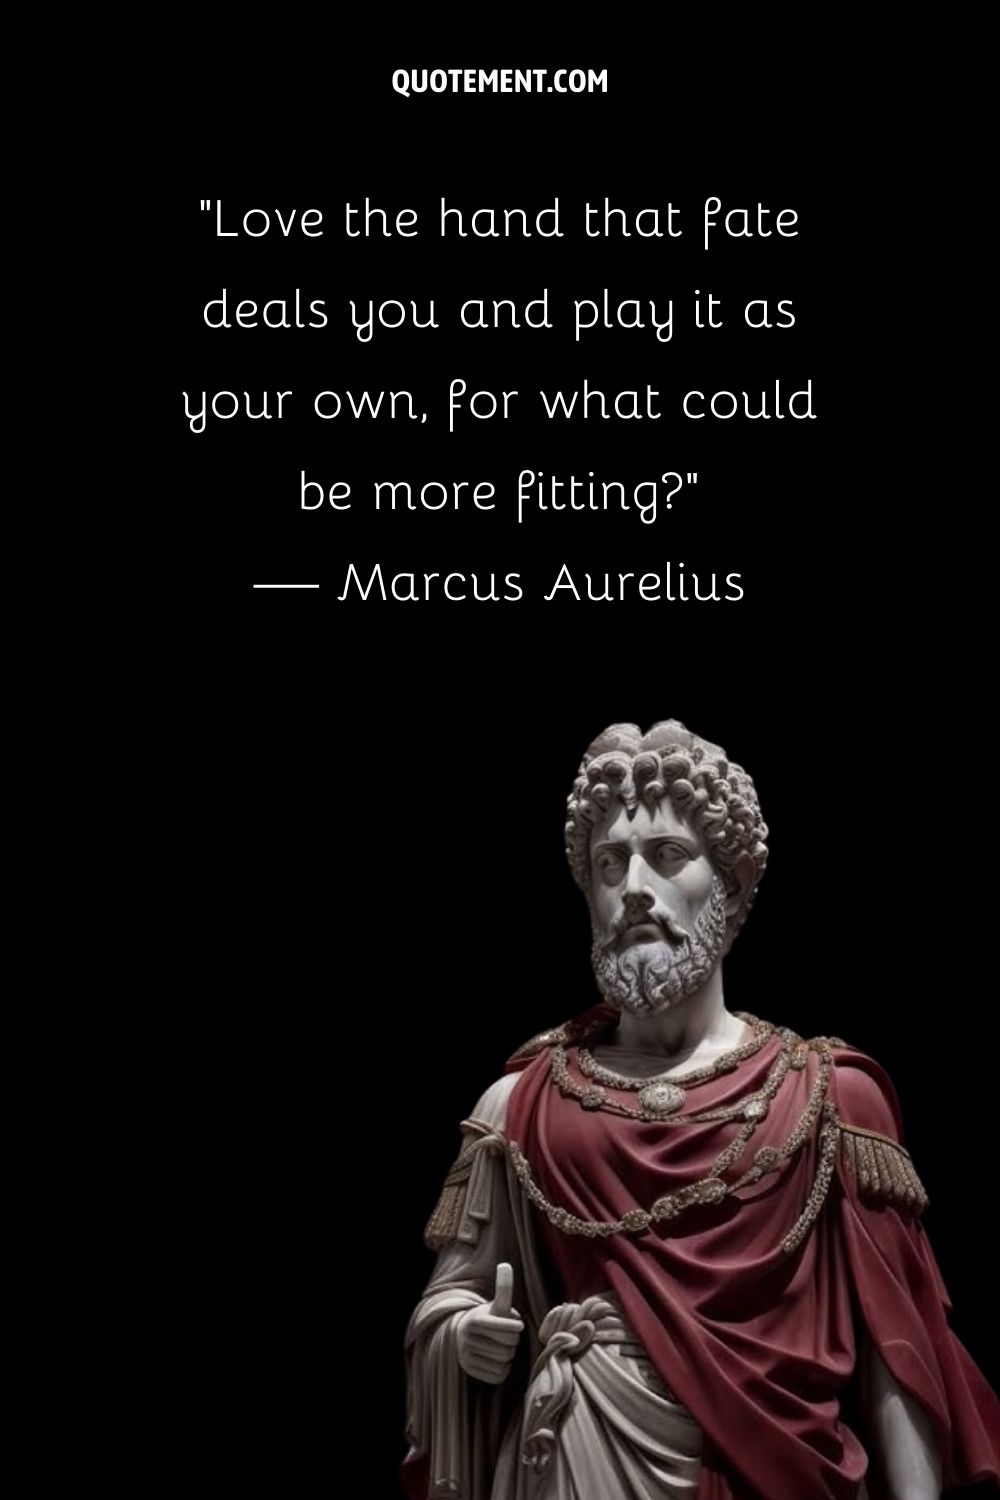 Marcus Aurelius statue embodies stoic wisdom.